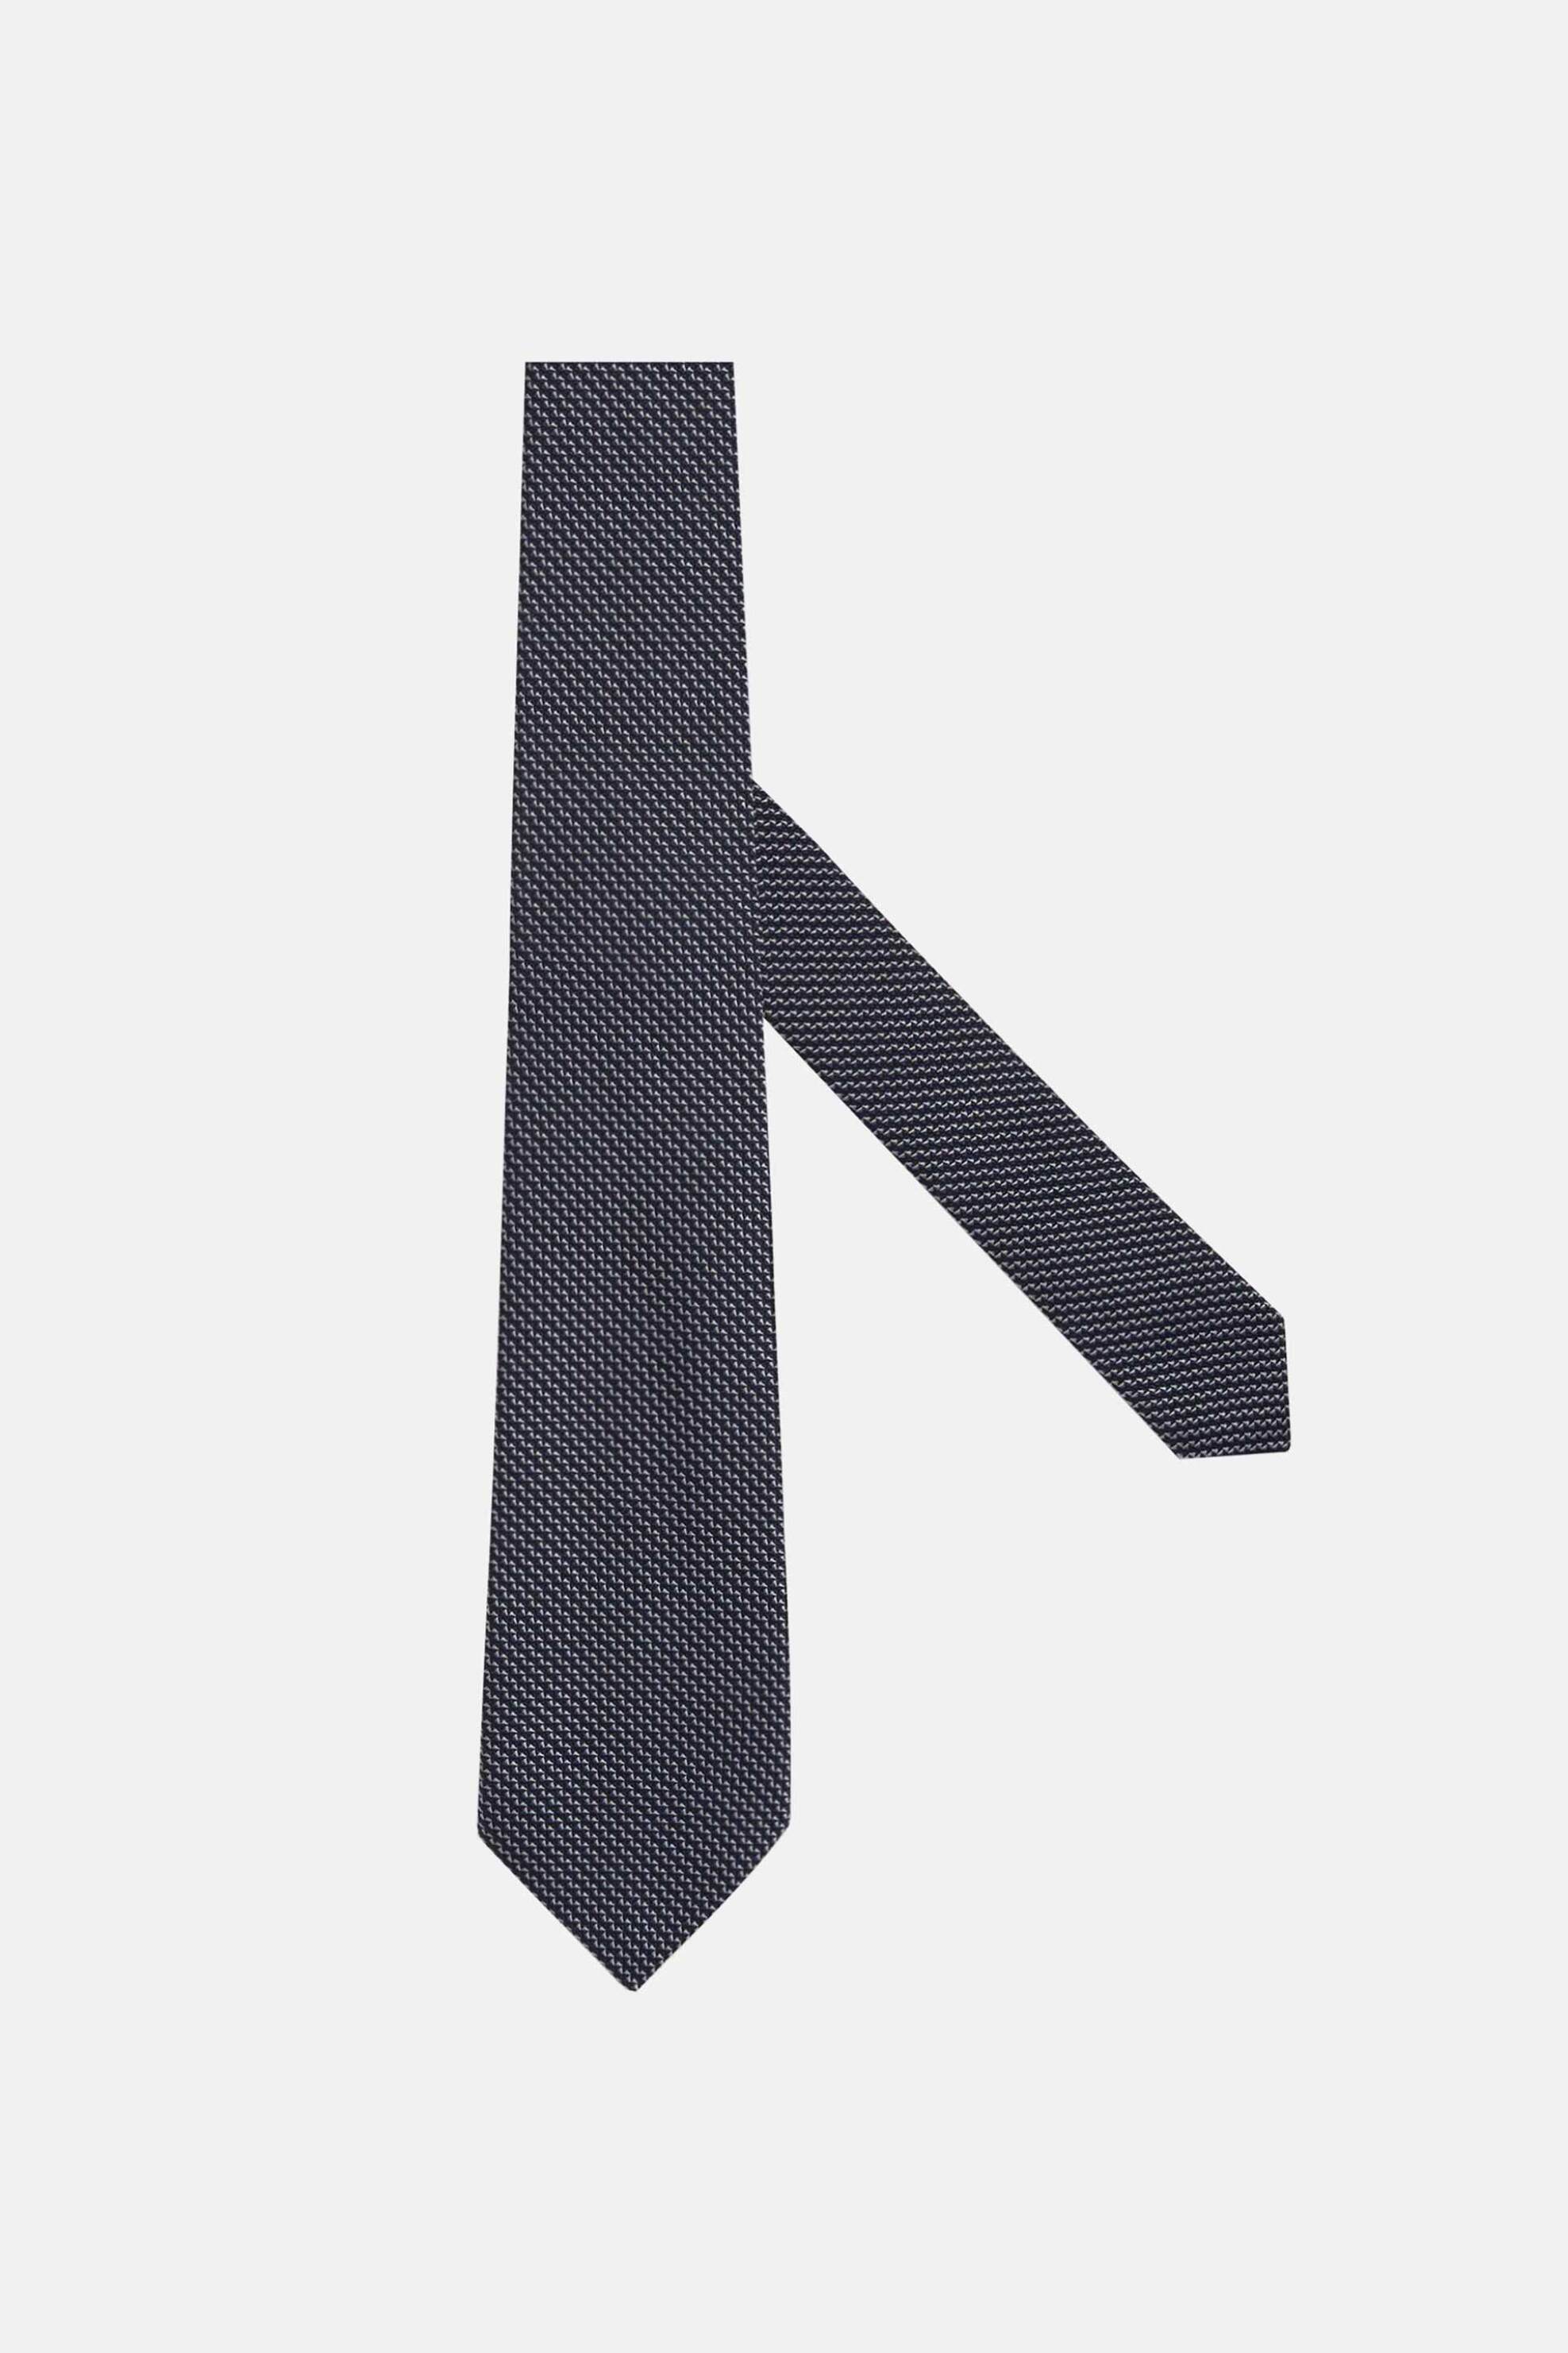 Ανδρική Μόδα > Ανδρικά Αξεσουάρ > Ανδρικές Γραβάτες & Παπιγιόν Boggi Milano ανδρική γραβάτα με μικροσχέδιο - BO24P068601 Μπλε Σκούρο